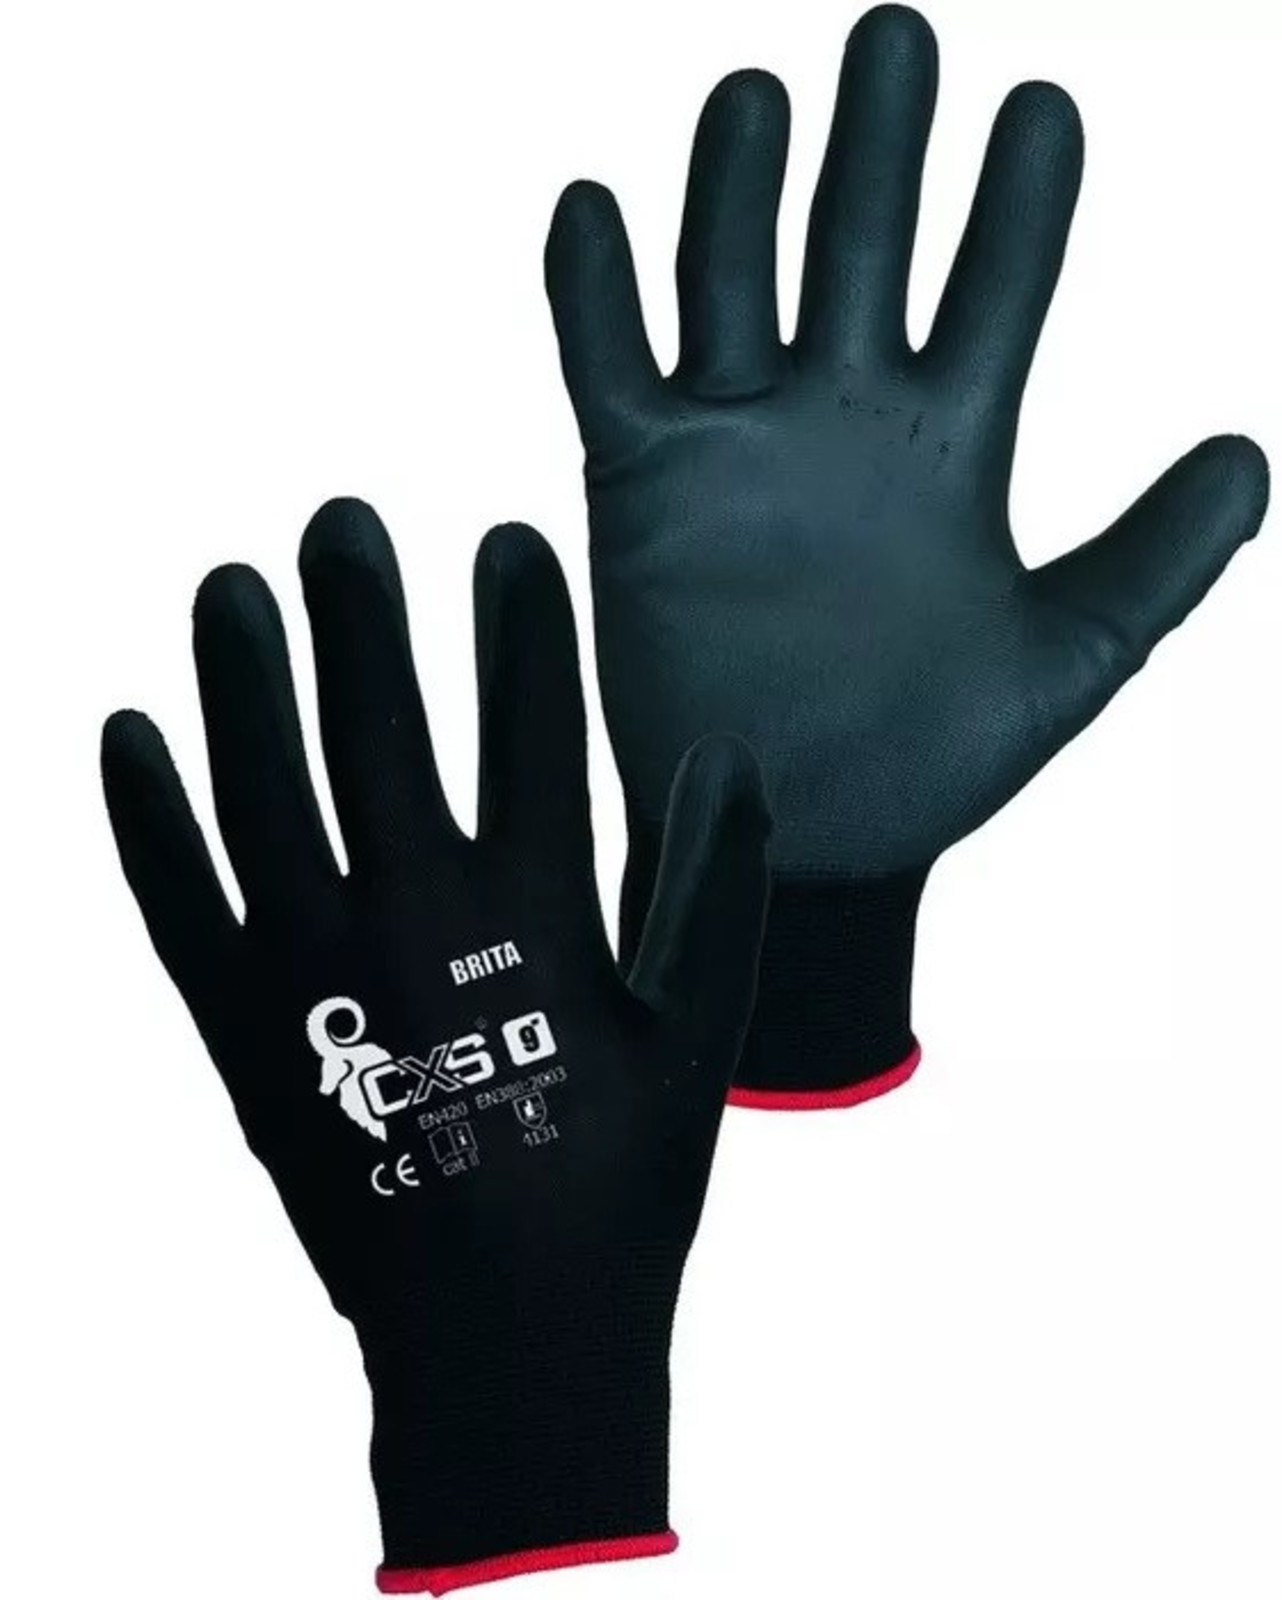 Pracovné rukavice CXS Brita čierne - veľkosť: 11/XXL, farba: čierna